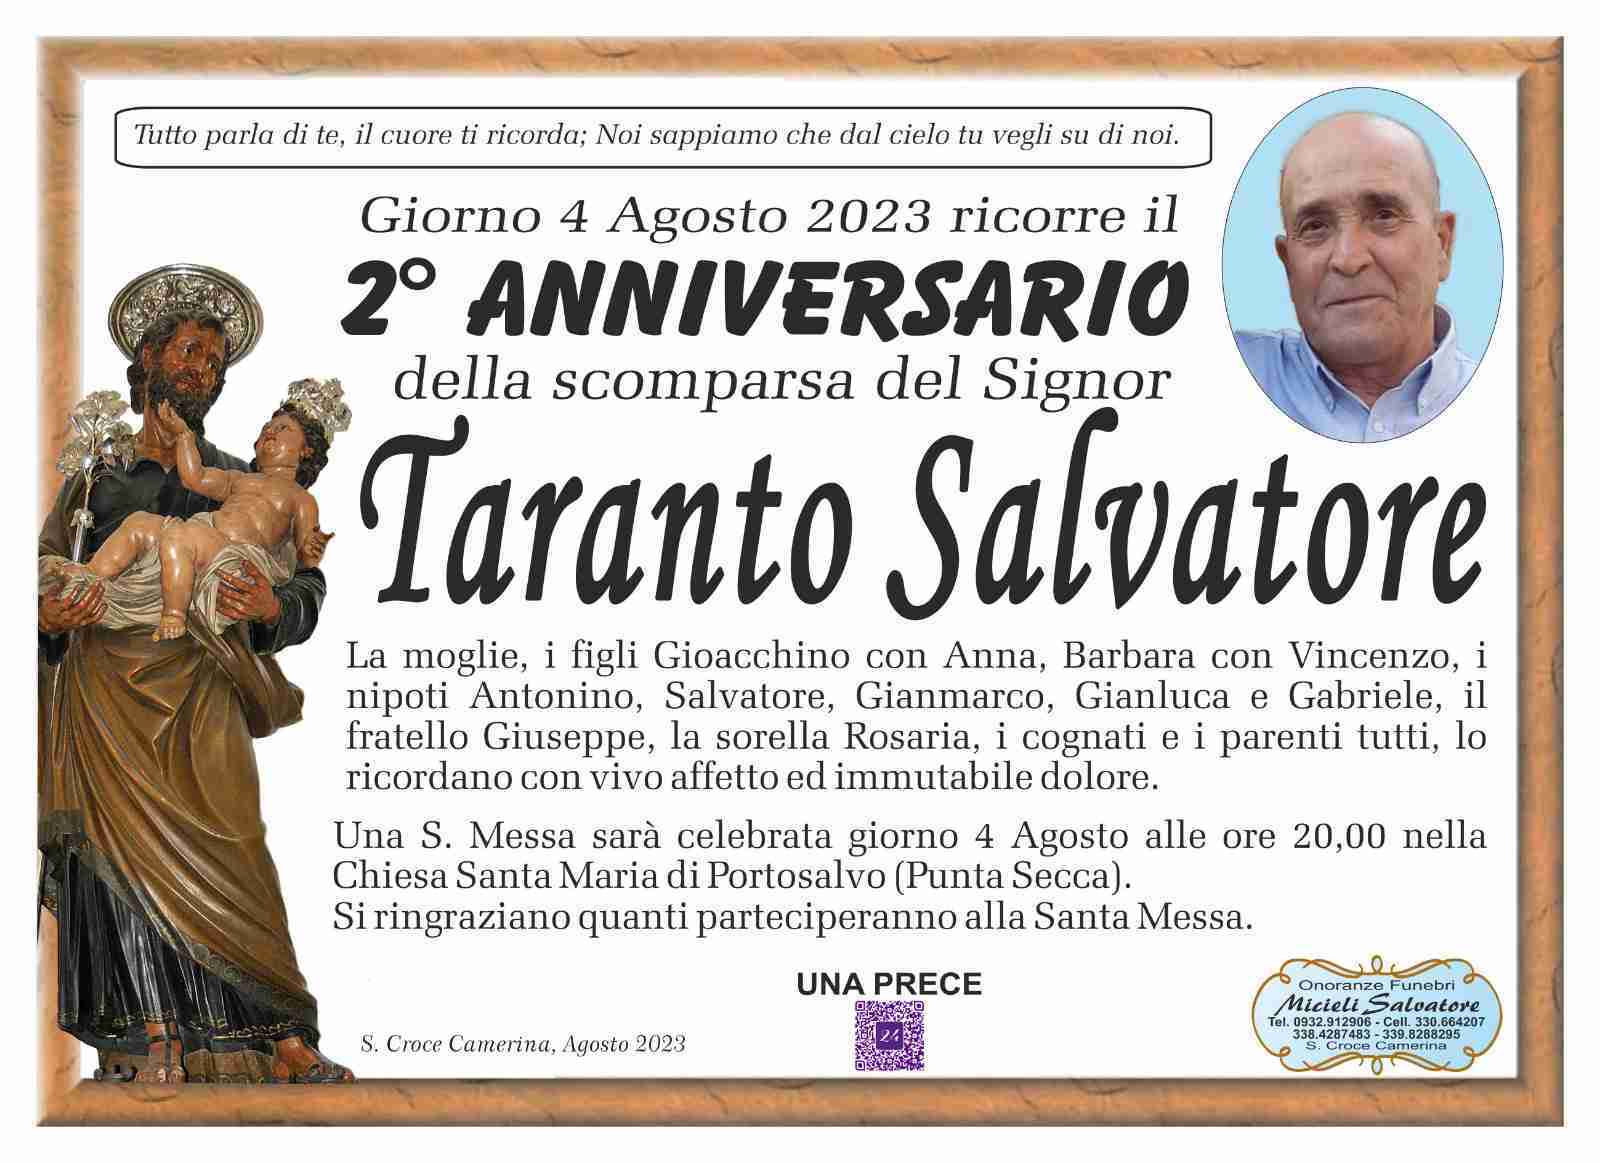 Salvatore Taranto